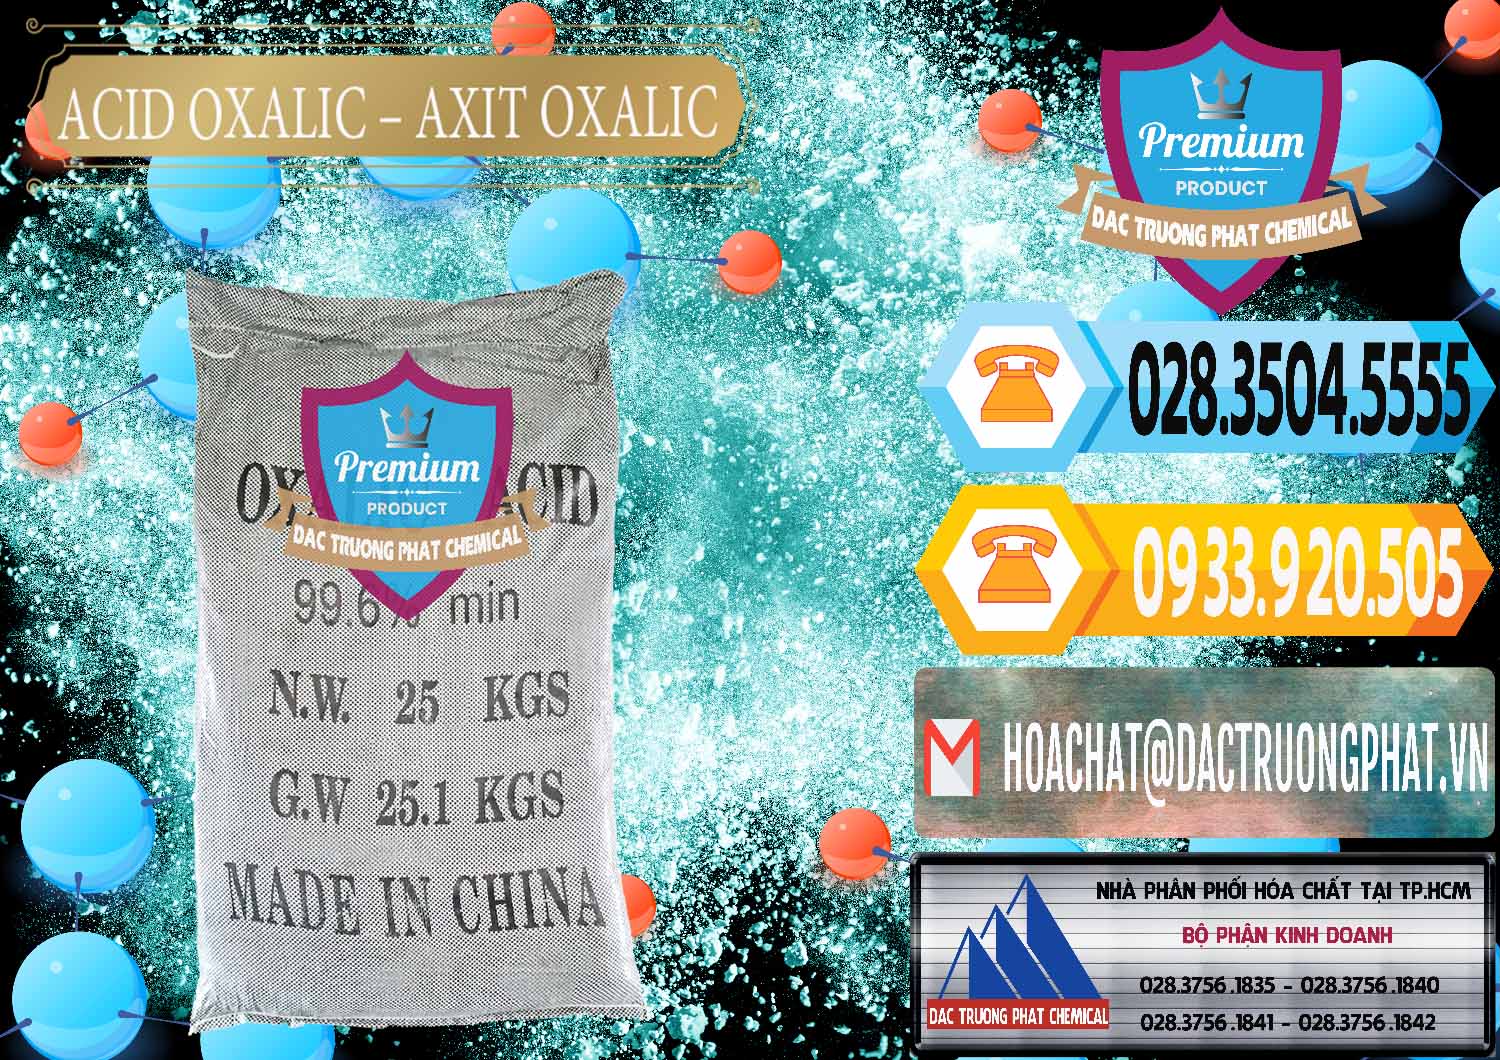 Nơi chuyên kinh doanh và bán Acid Oxalic – Axit Oxalic 99.6% Trung Quốc China - 0014 - Công ty cung cấp _ phân phối hóa chất tại TP.HCM - hoachattayrua.net